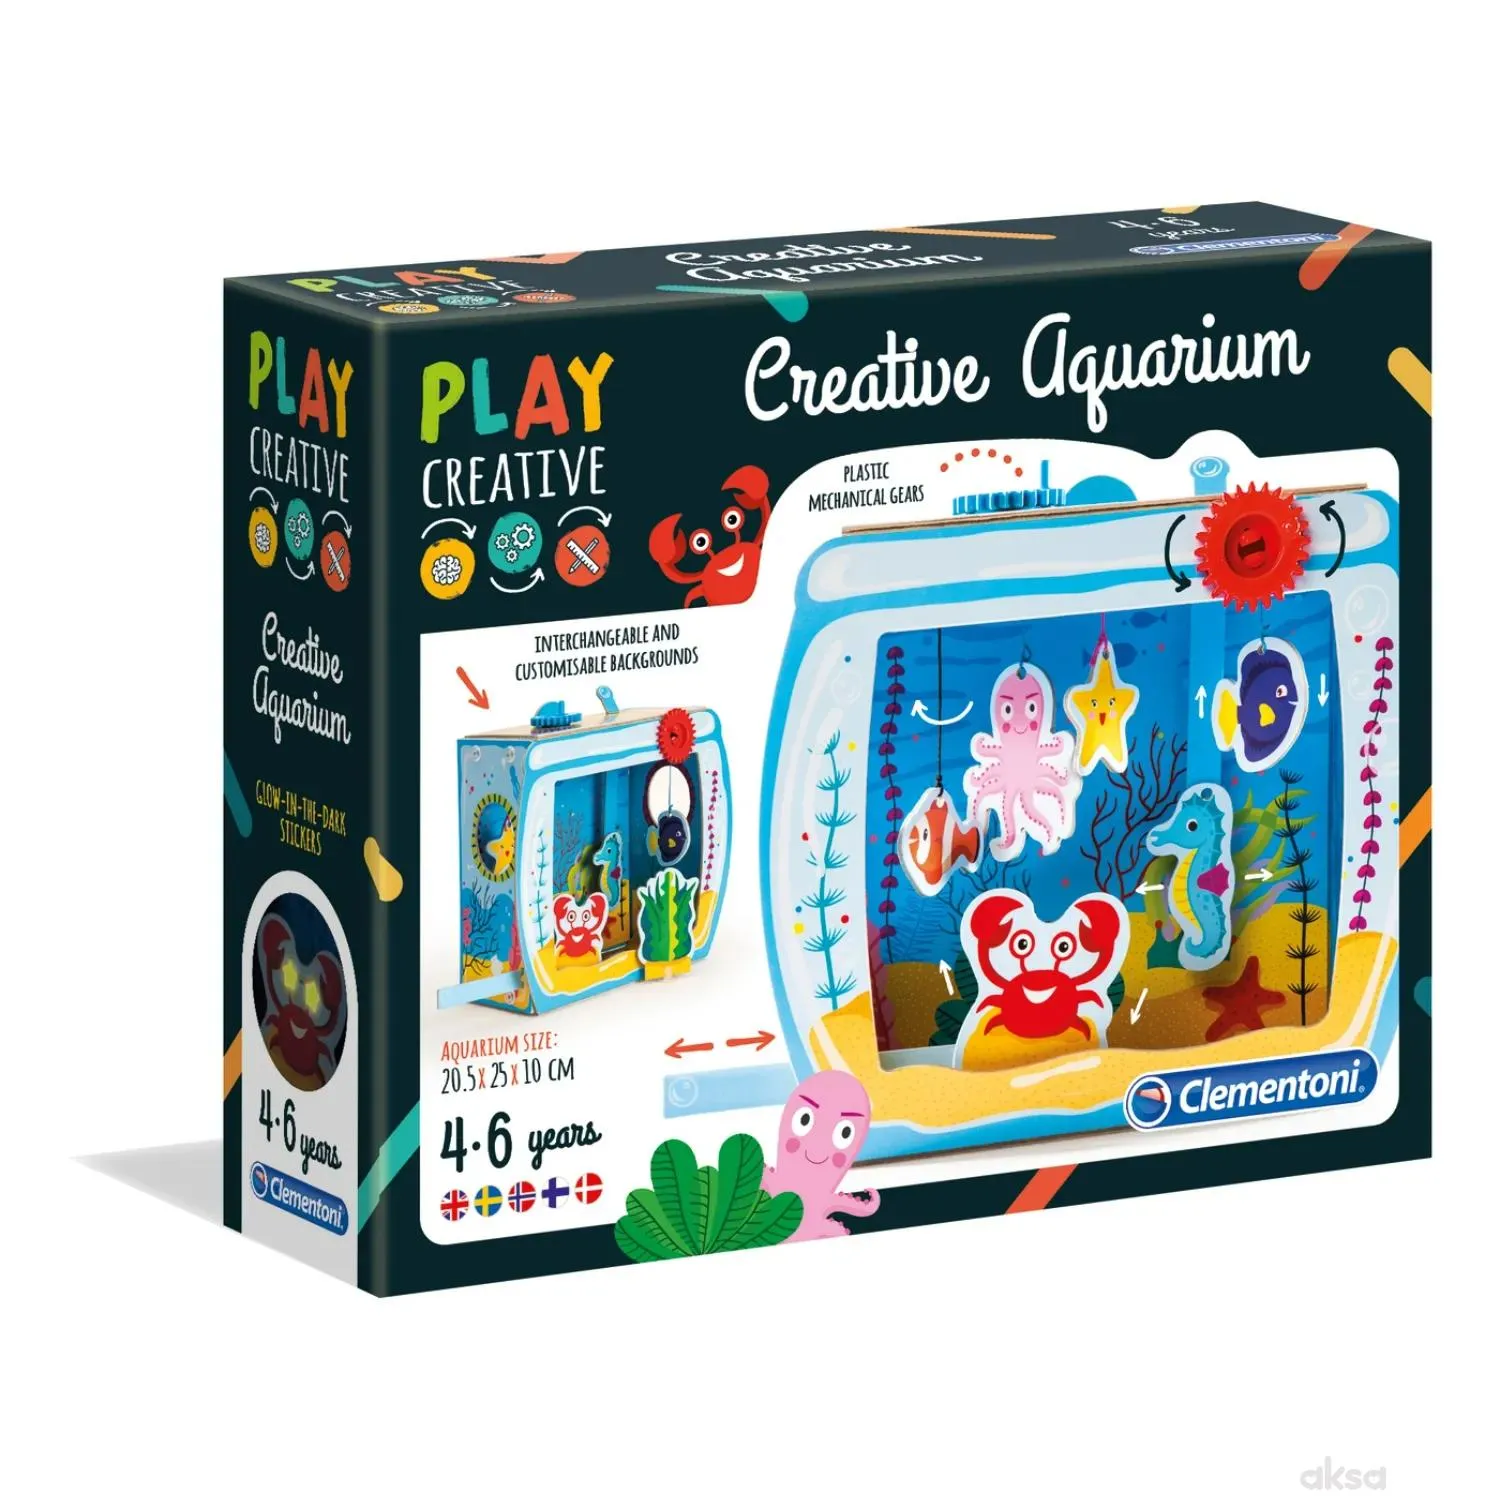 Play Creative kreativni akvarijum 50179 